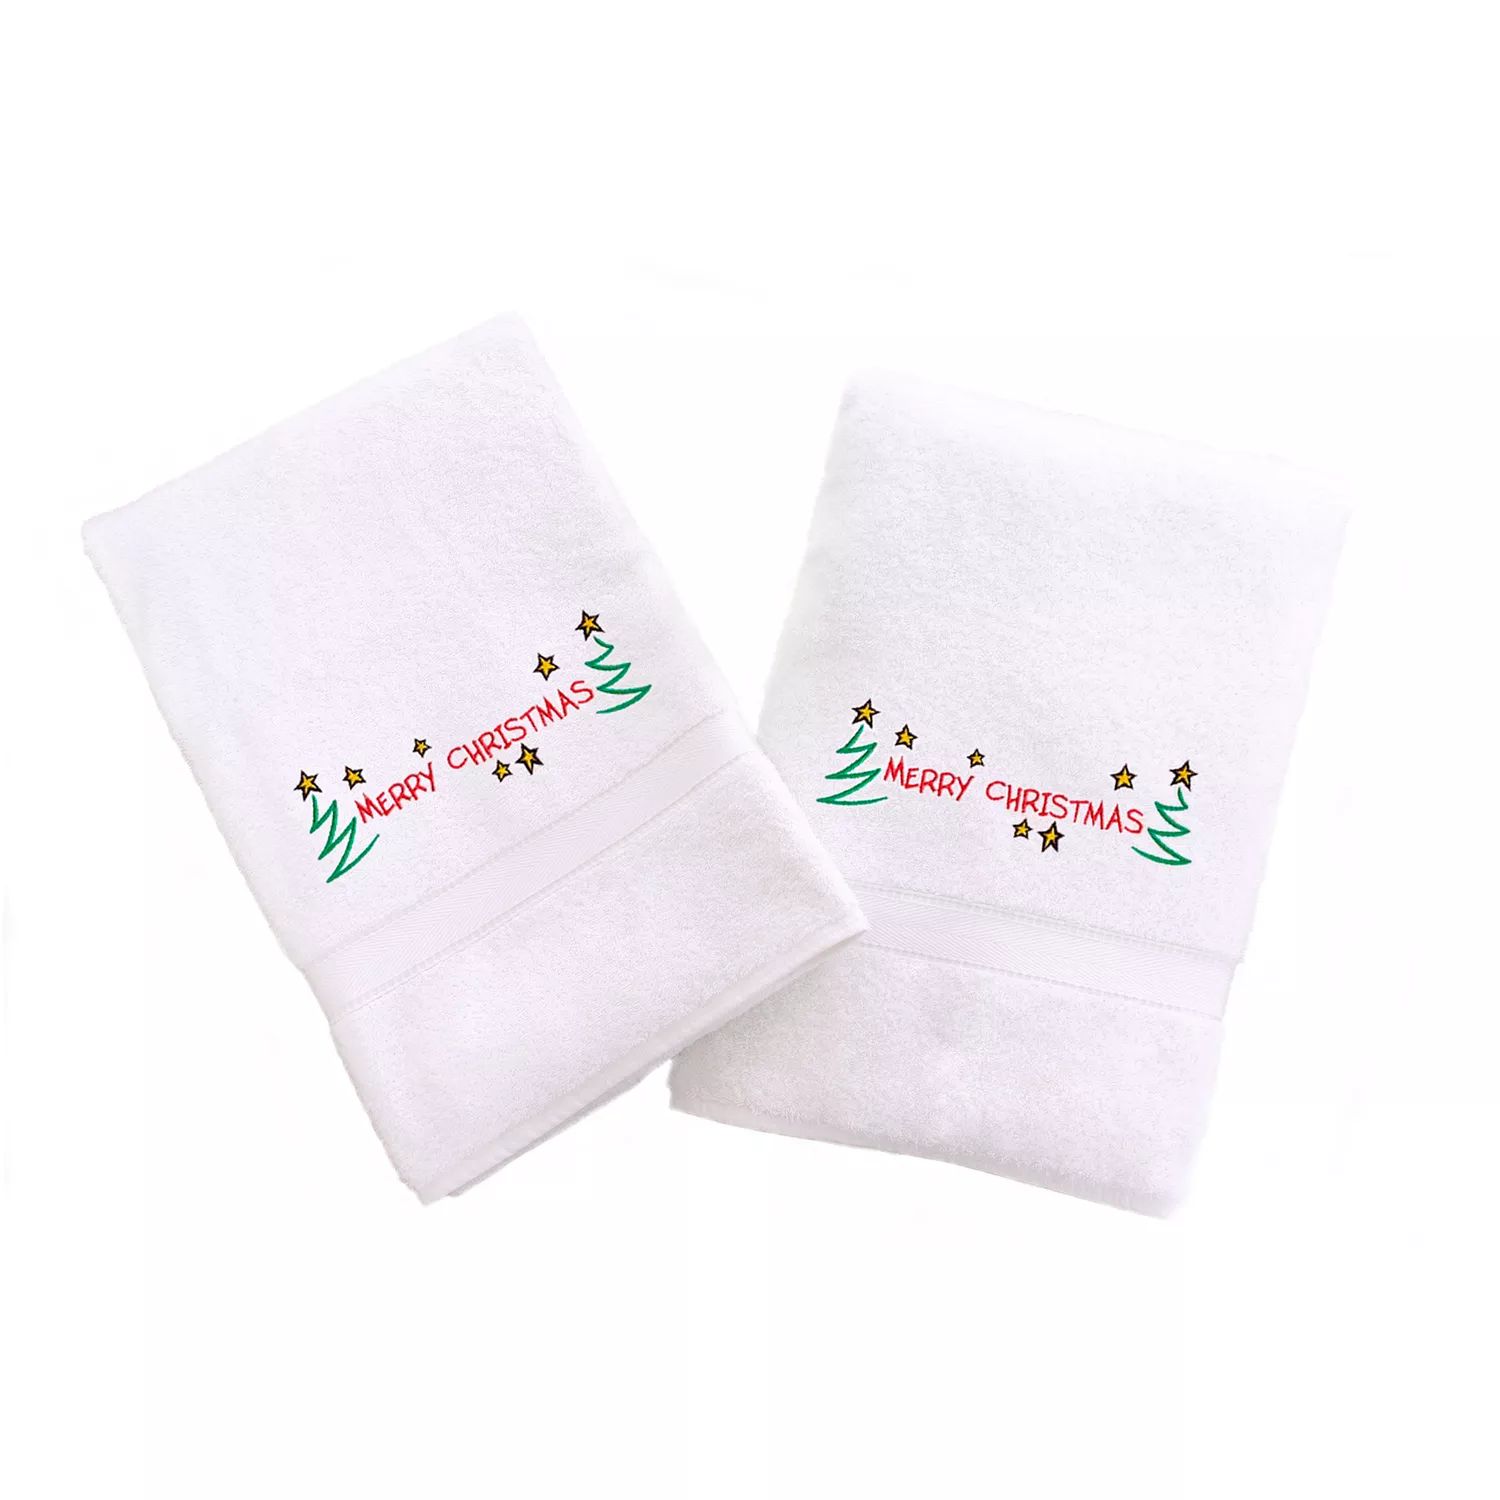 Linum Home Textiles Праздничные полотенца для рук с вышивкой бордюром, 2 упаковки